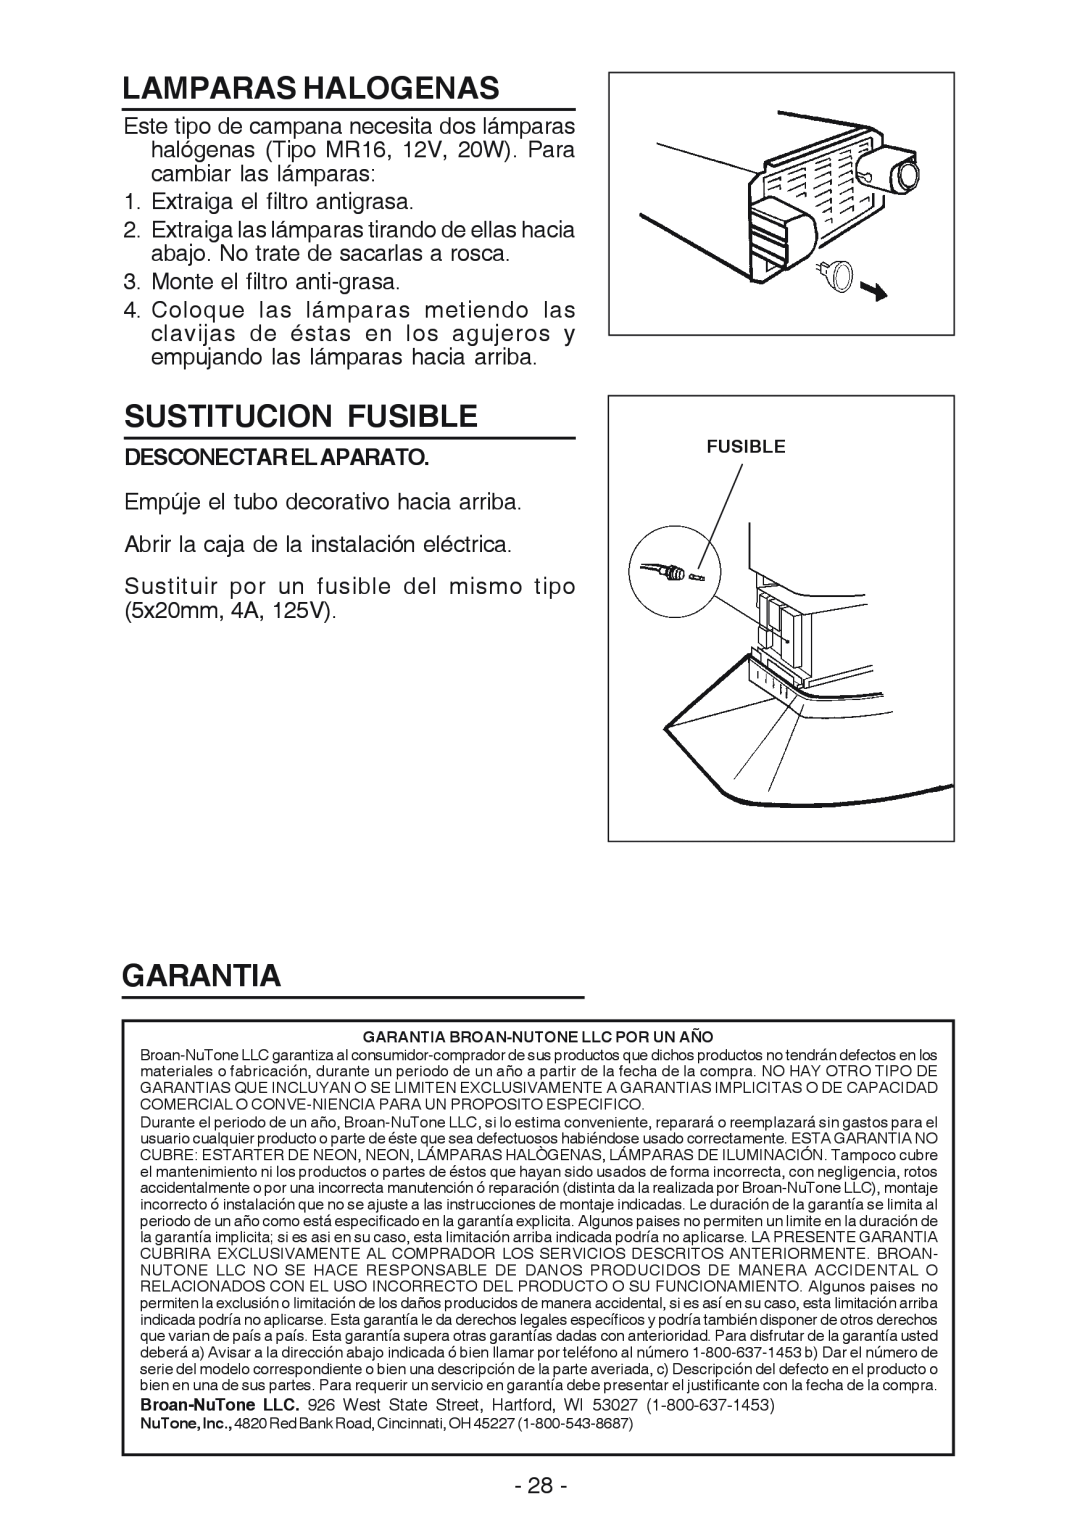 NuTone NP629004 manual Lamparas Halogenas, Sustitucion Fusible, Garantia, Desconectarelaparato 